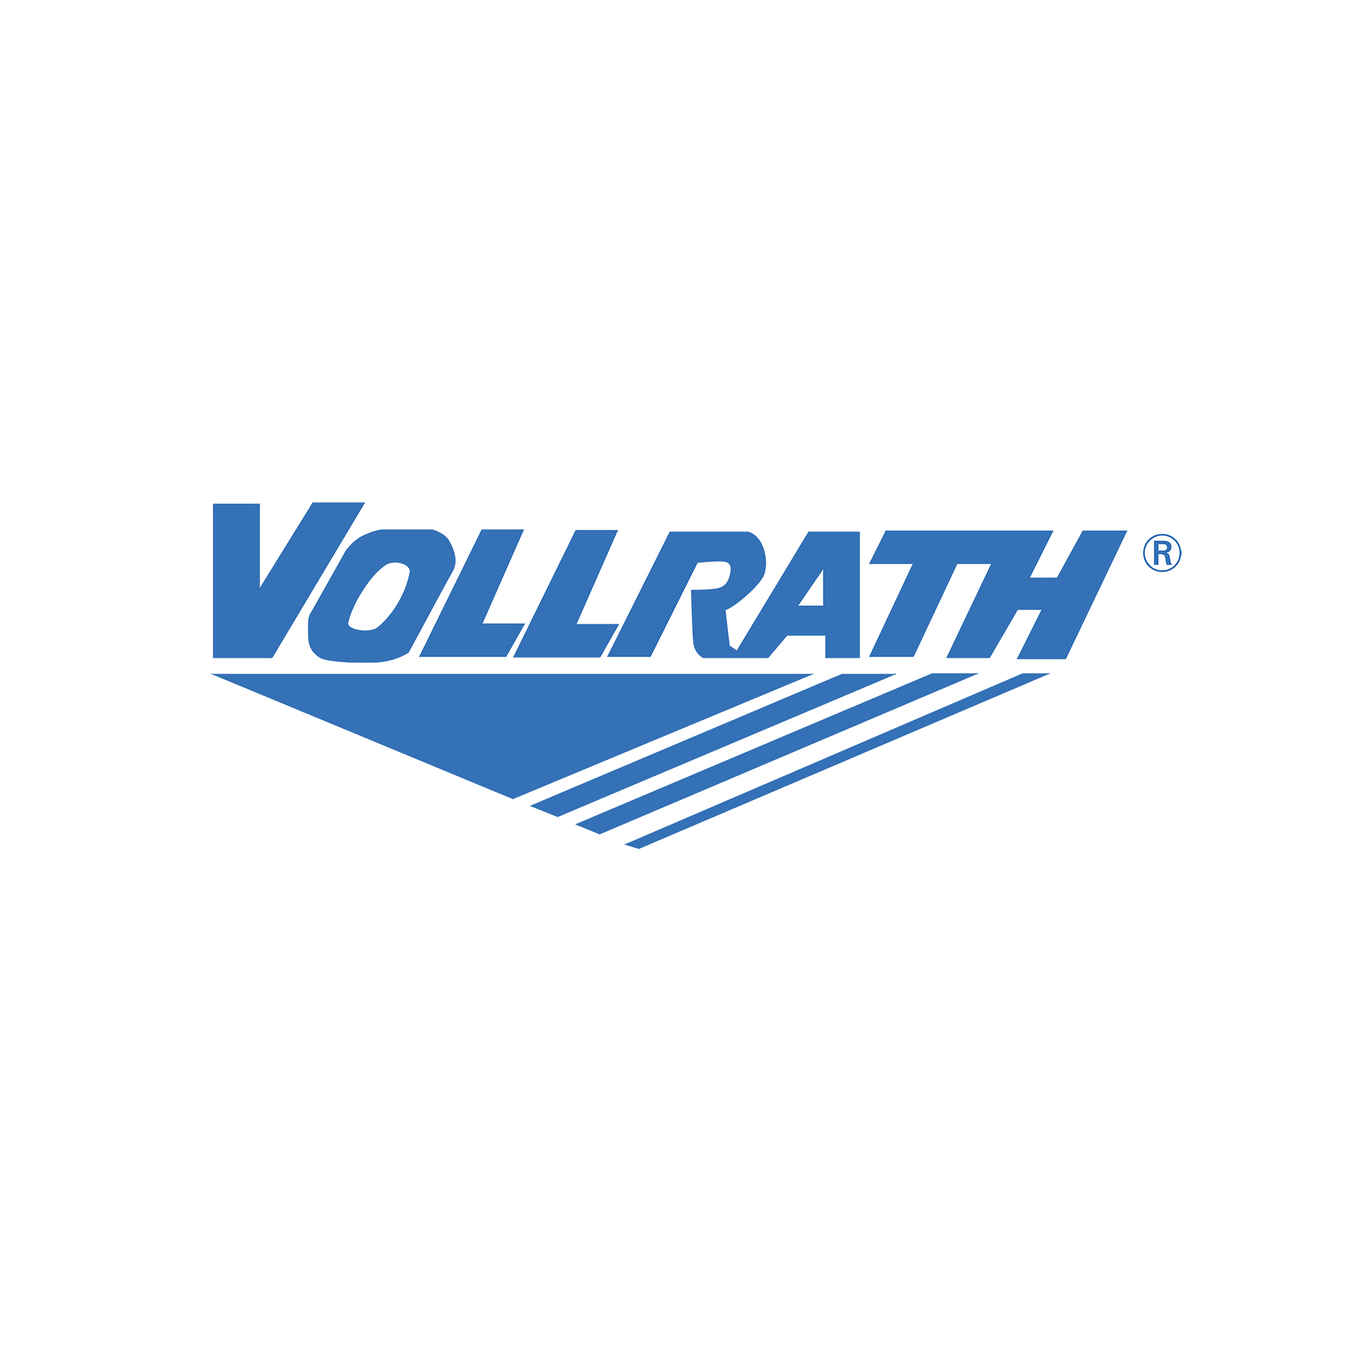 Vollrath - Gecko Catering Equipment